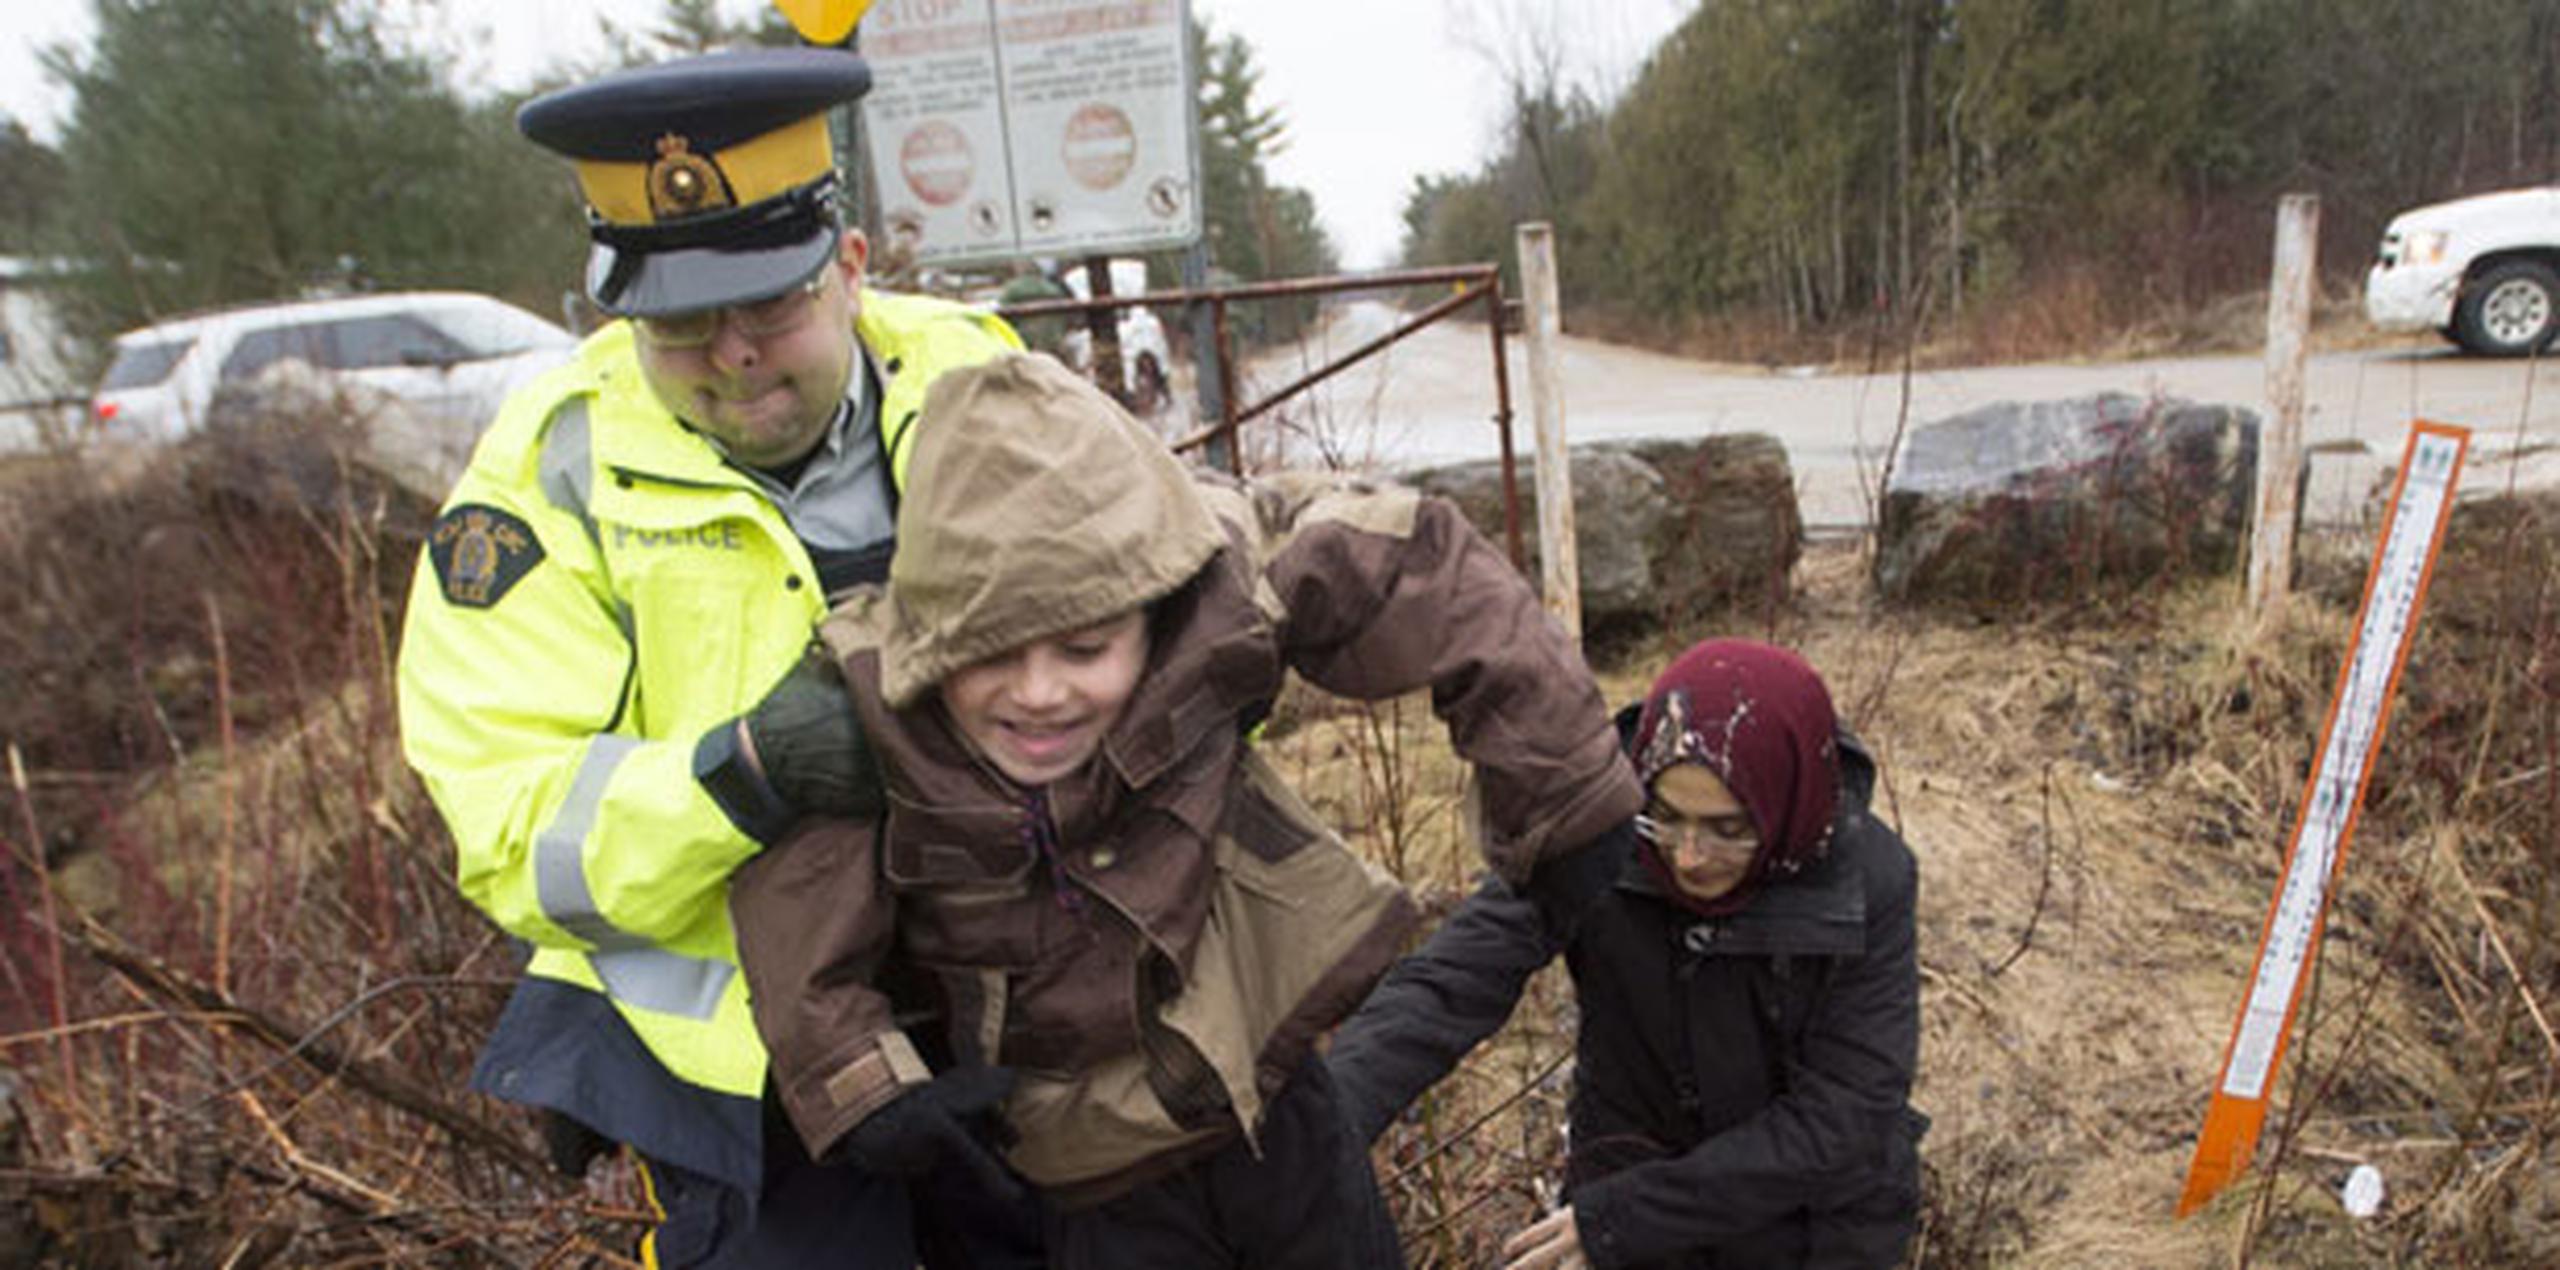 Quebec recibió la solicitud de refugio de 635 personas en febrero de este año frente a 99 en 2016.  (AP)